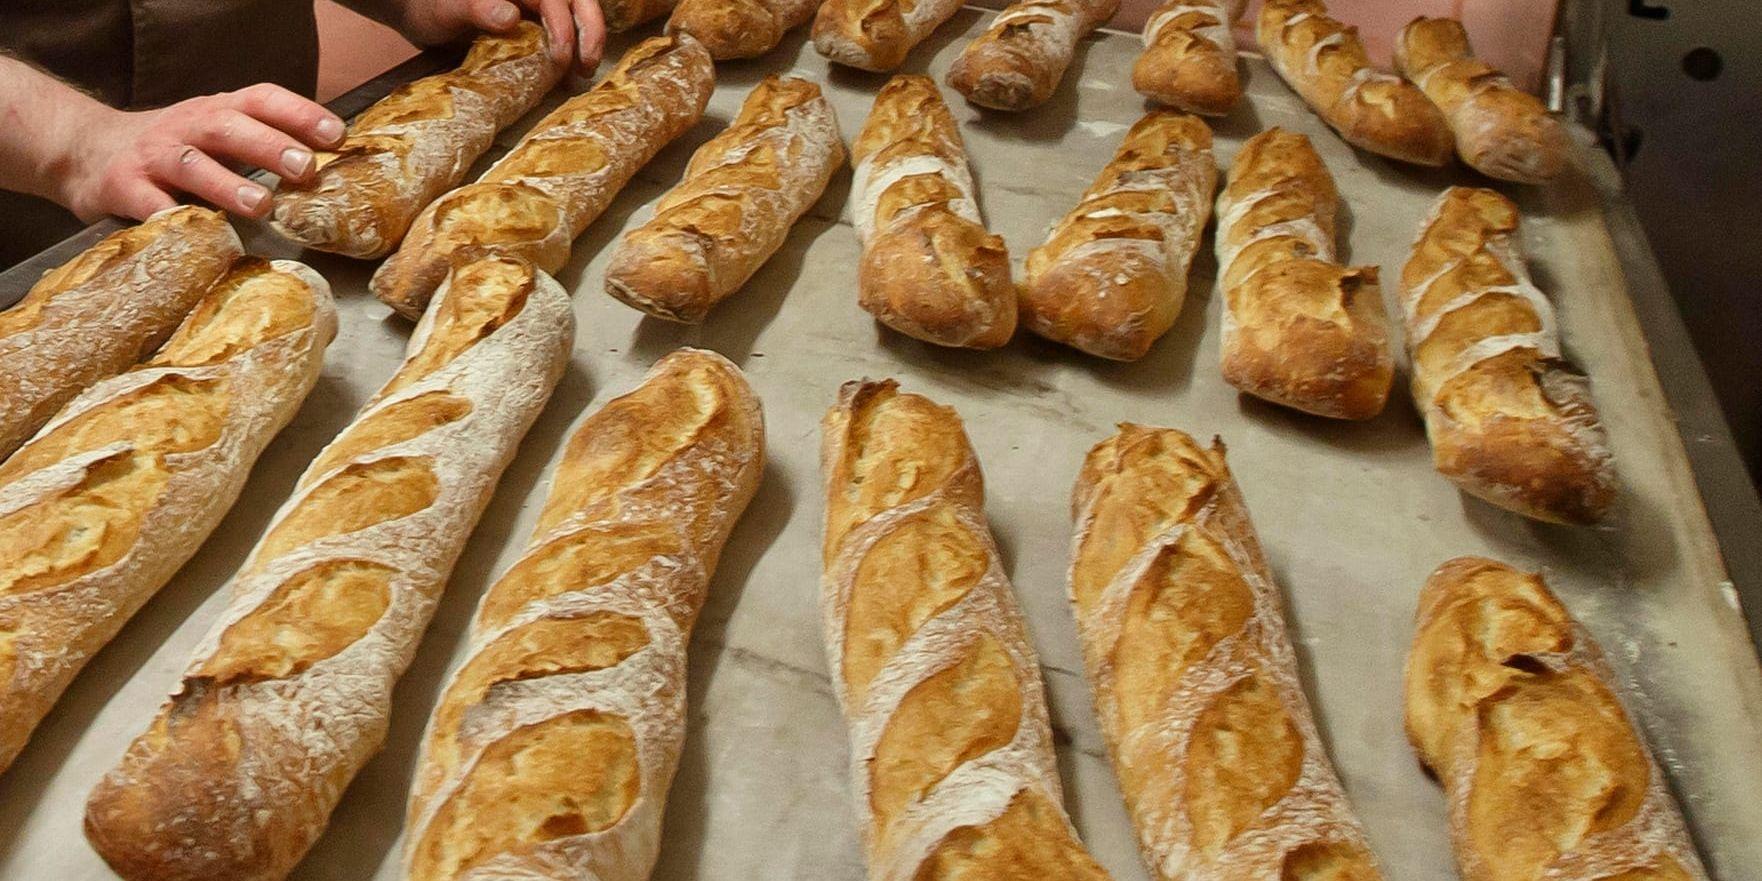 Franska bagerier får inte baka baguetter hursomhelst, enligt landets strikta lagstiftning när det gäller arbetstider. Arkivbild.